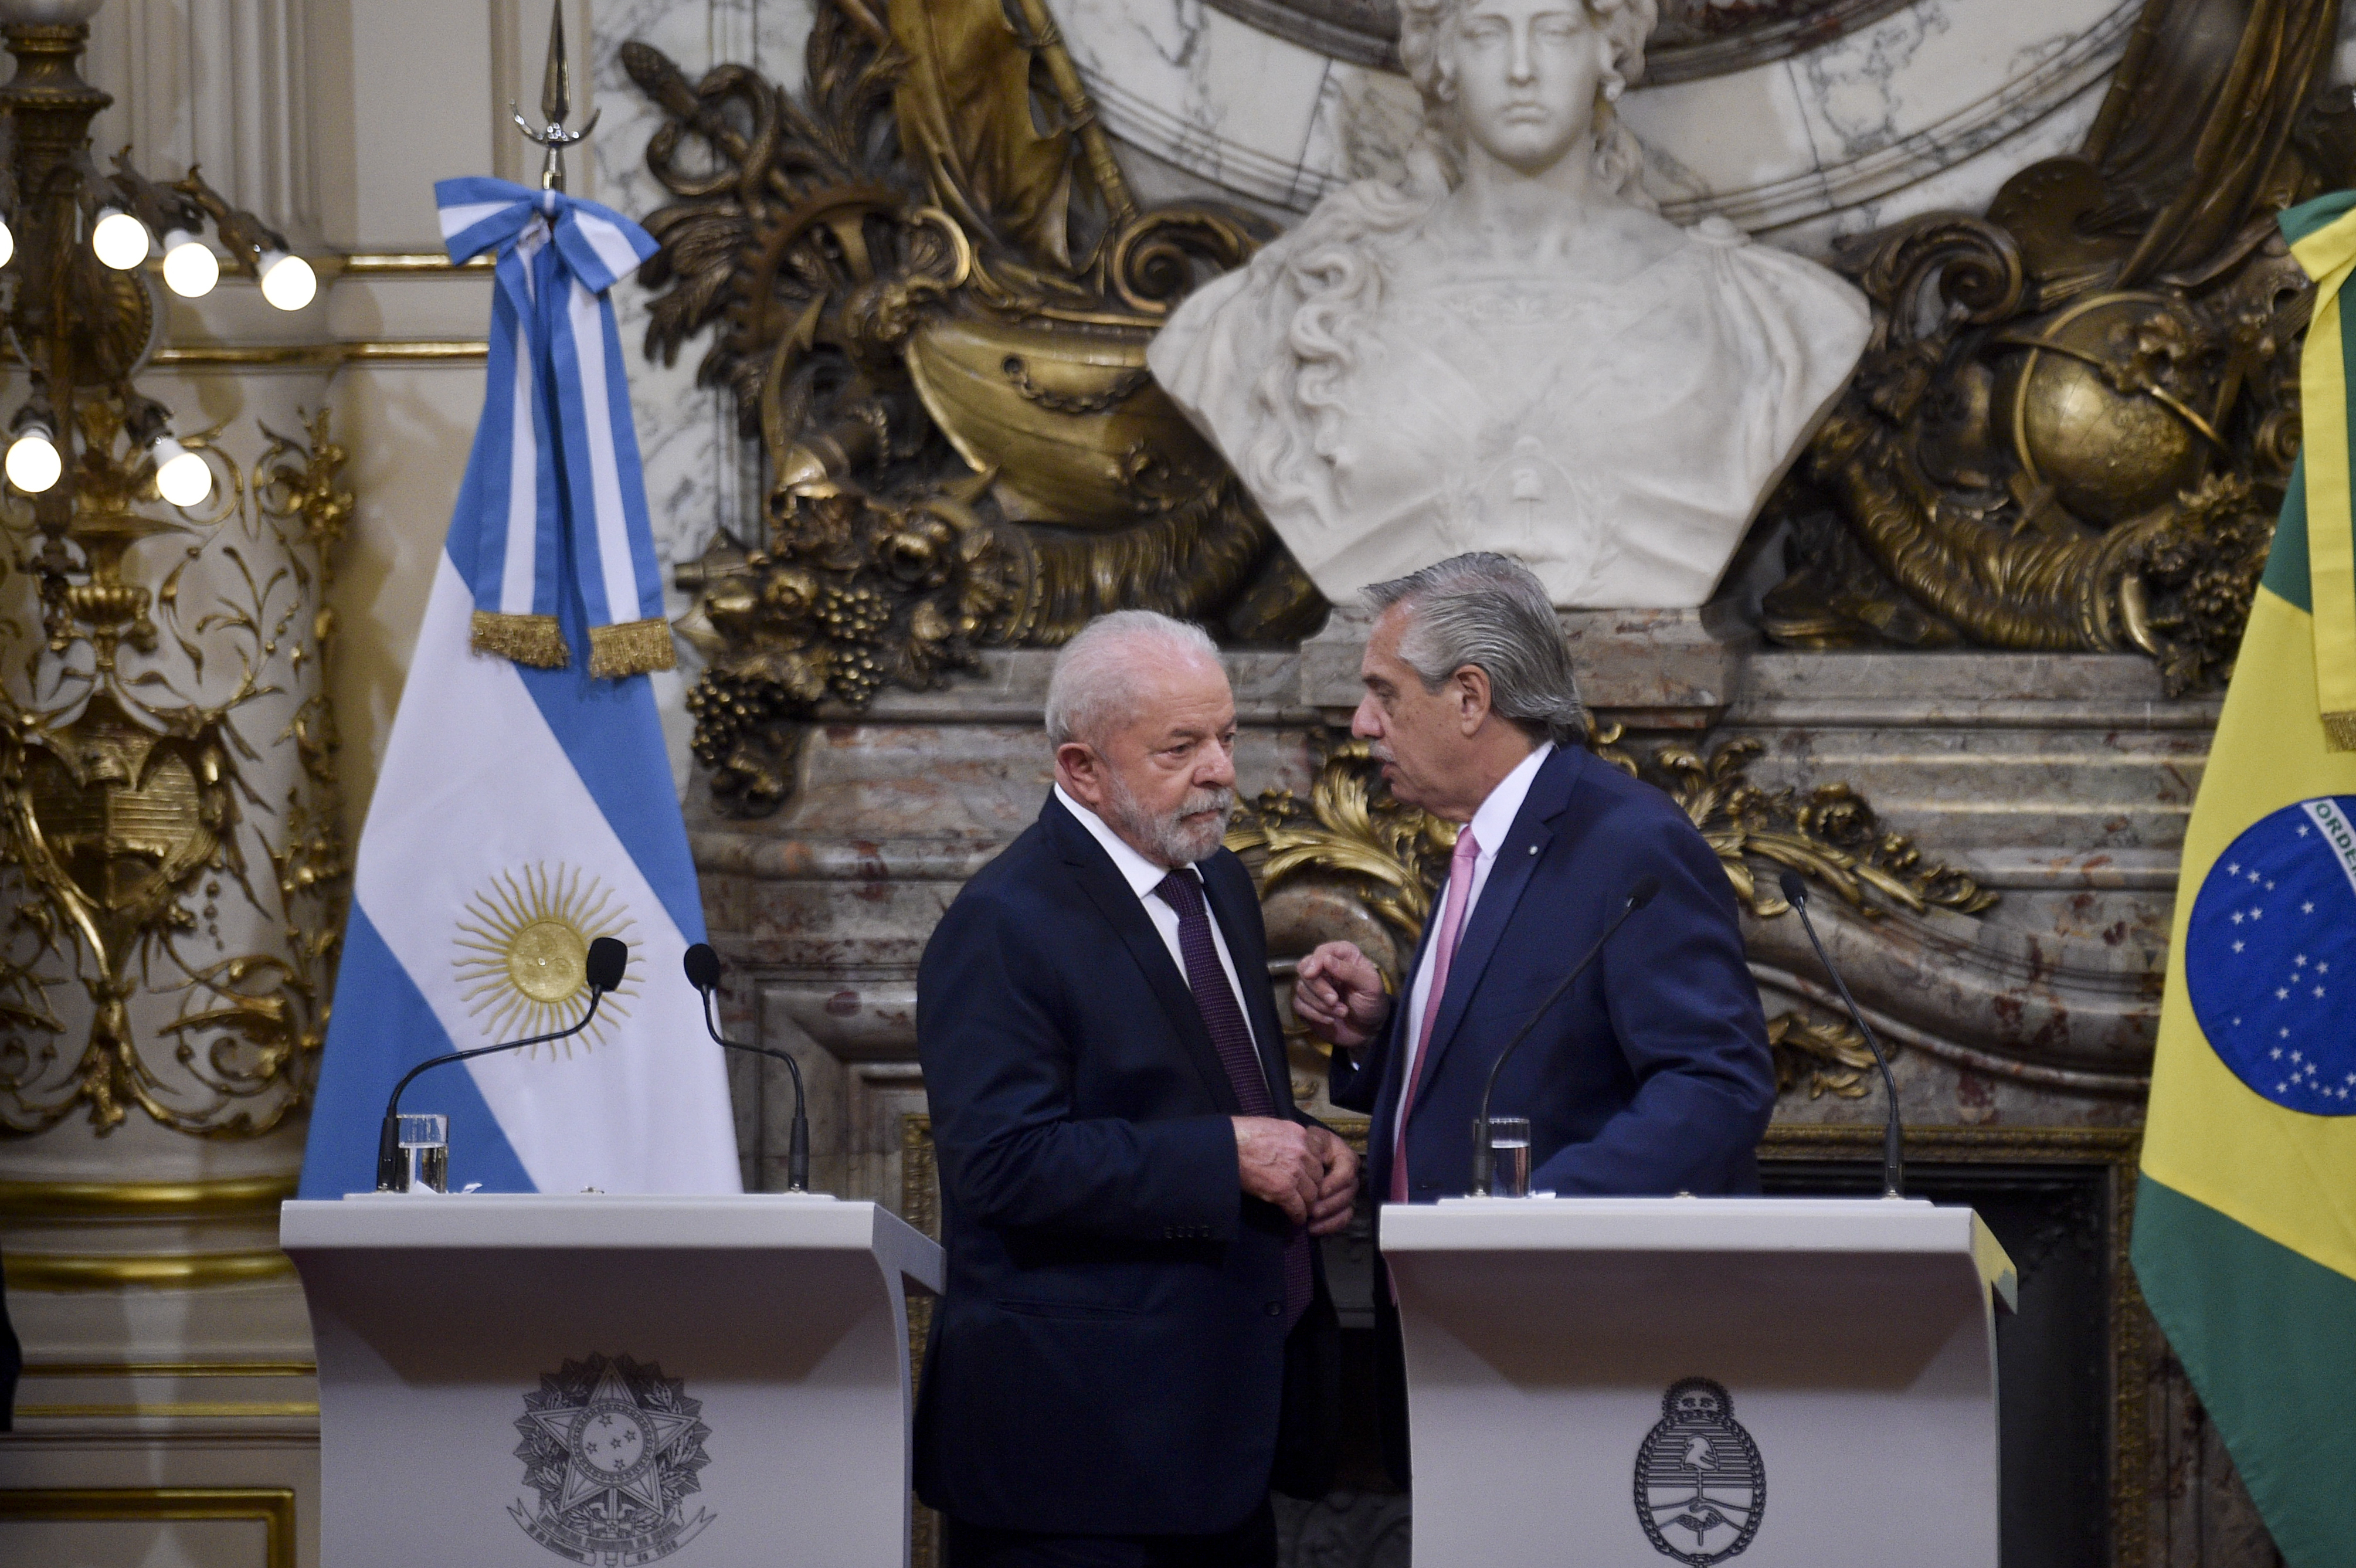 Südamerika - Argentinien und Brasilien wollen Beziehungen wiederbeleben